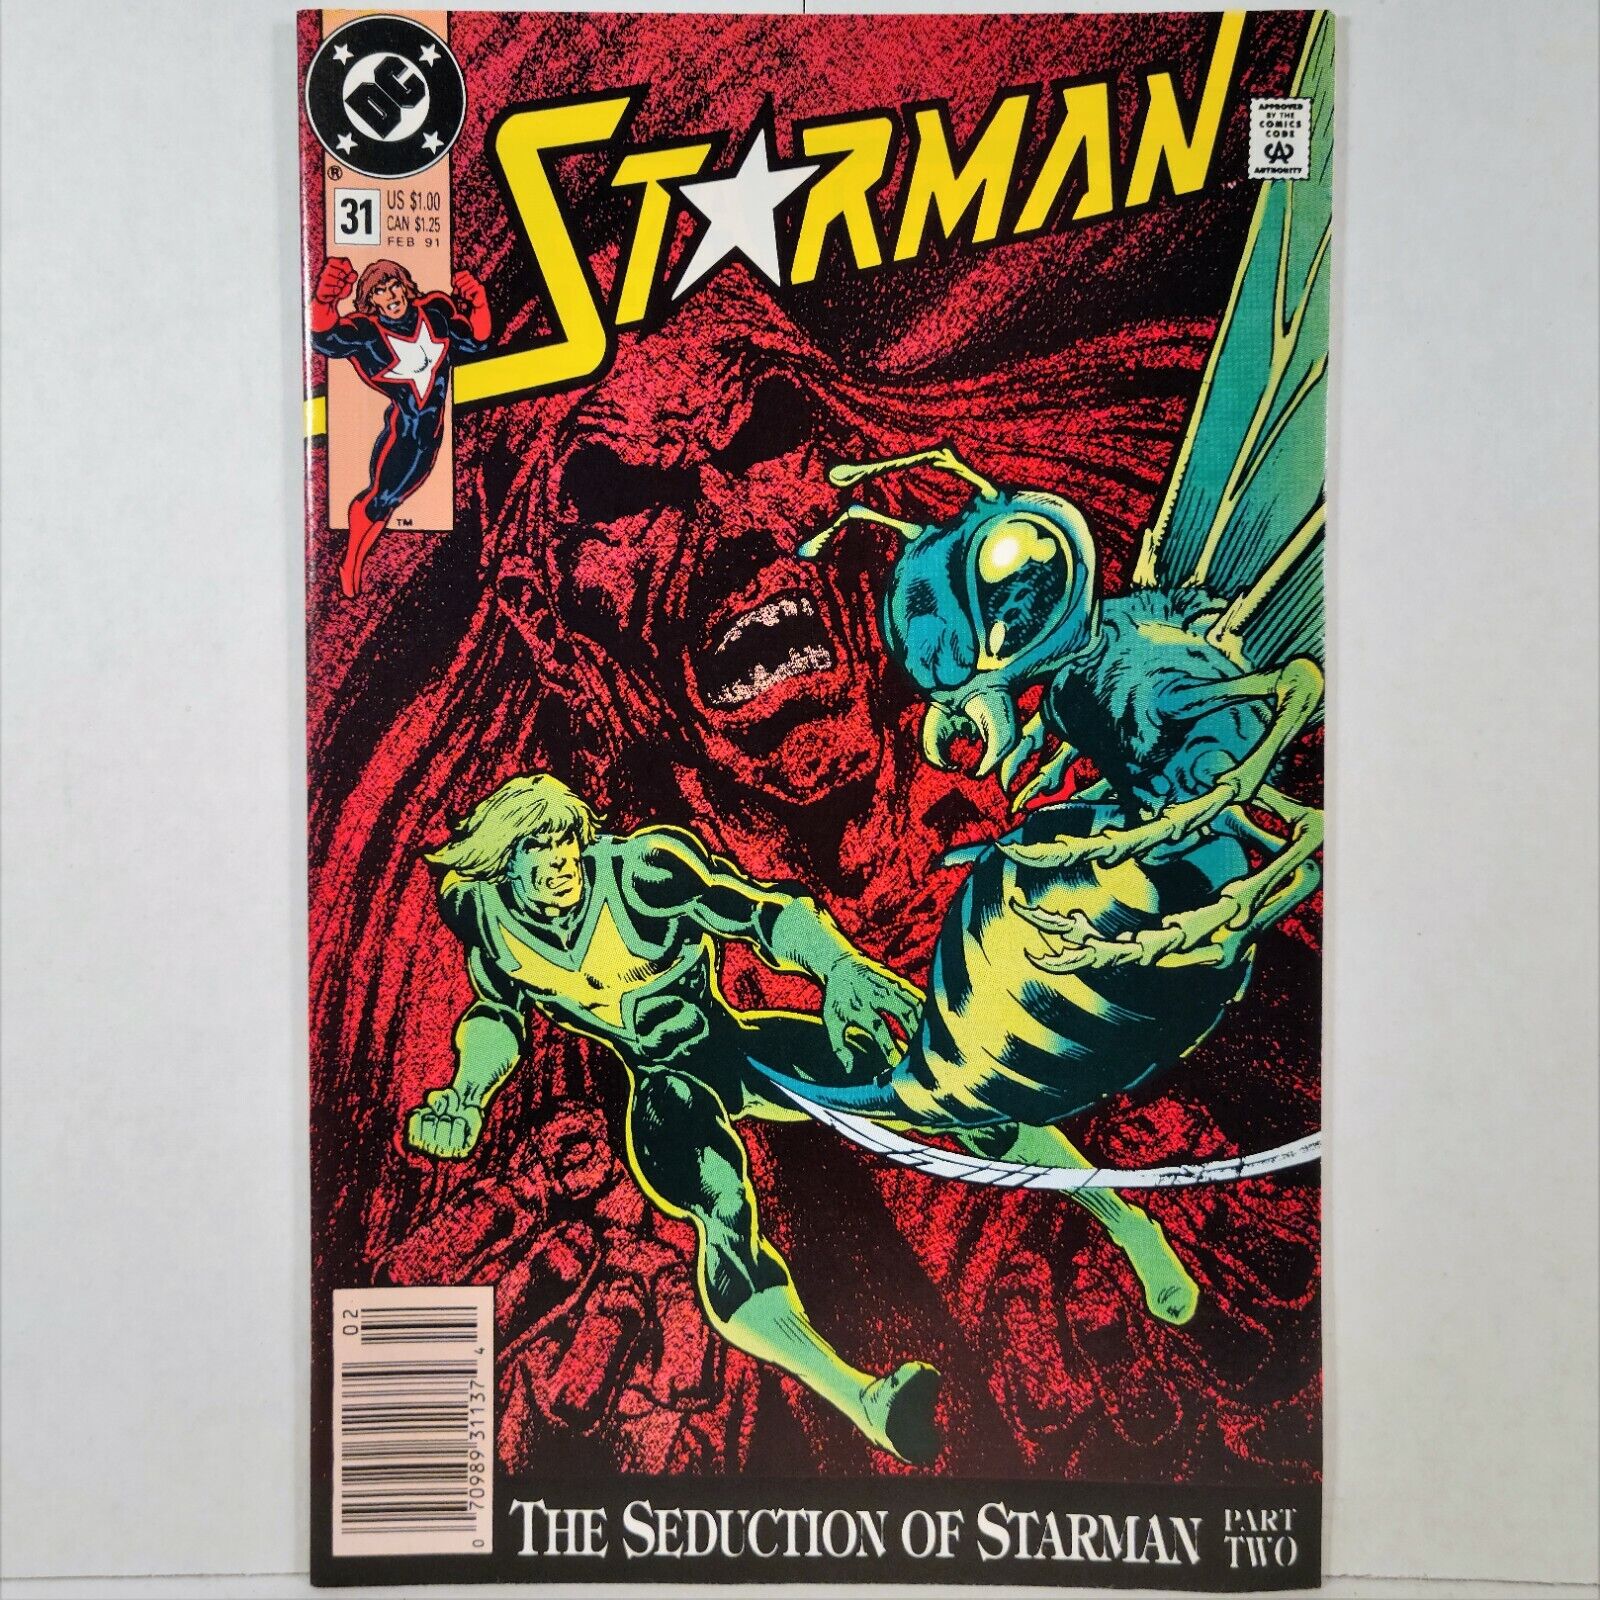 Starman - Vol. 1, No. 31 - DC Comics, Inc. - February 1991 - Buy It Now